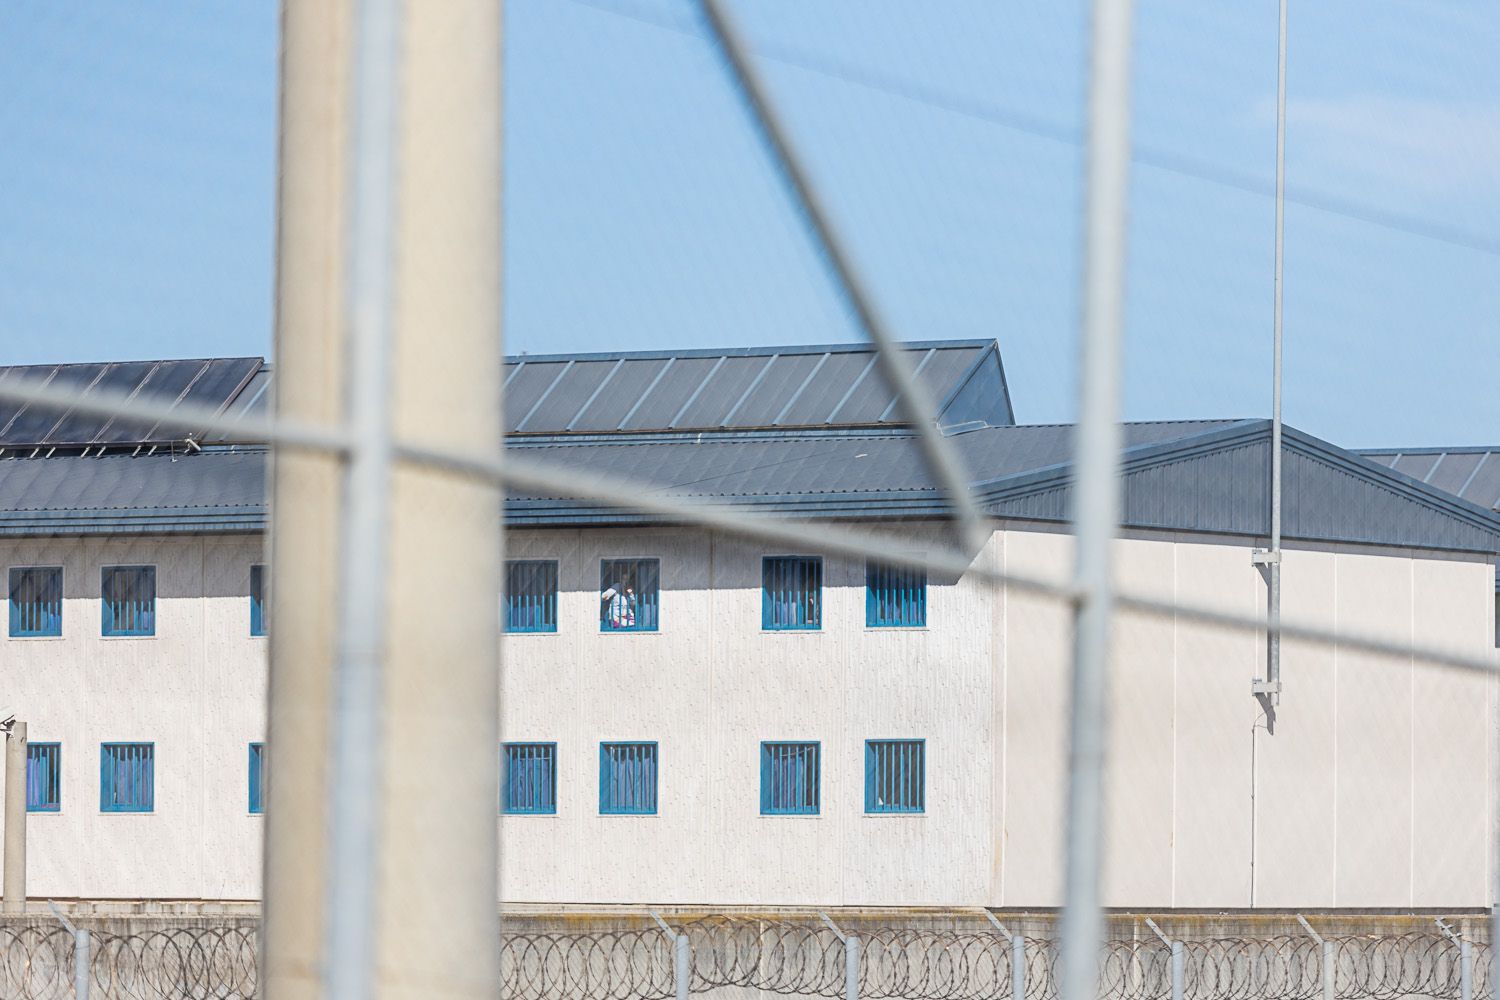 Entidades temen que haya "abuso de poder" si los funcionarios de prisiones se convierten en agentes de la autoridad.